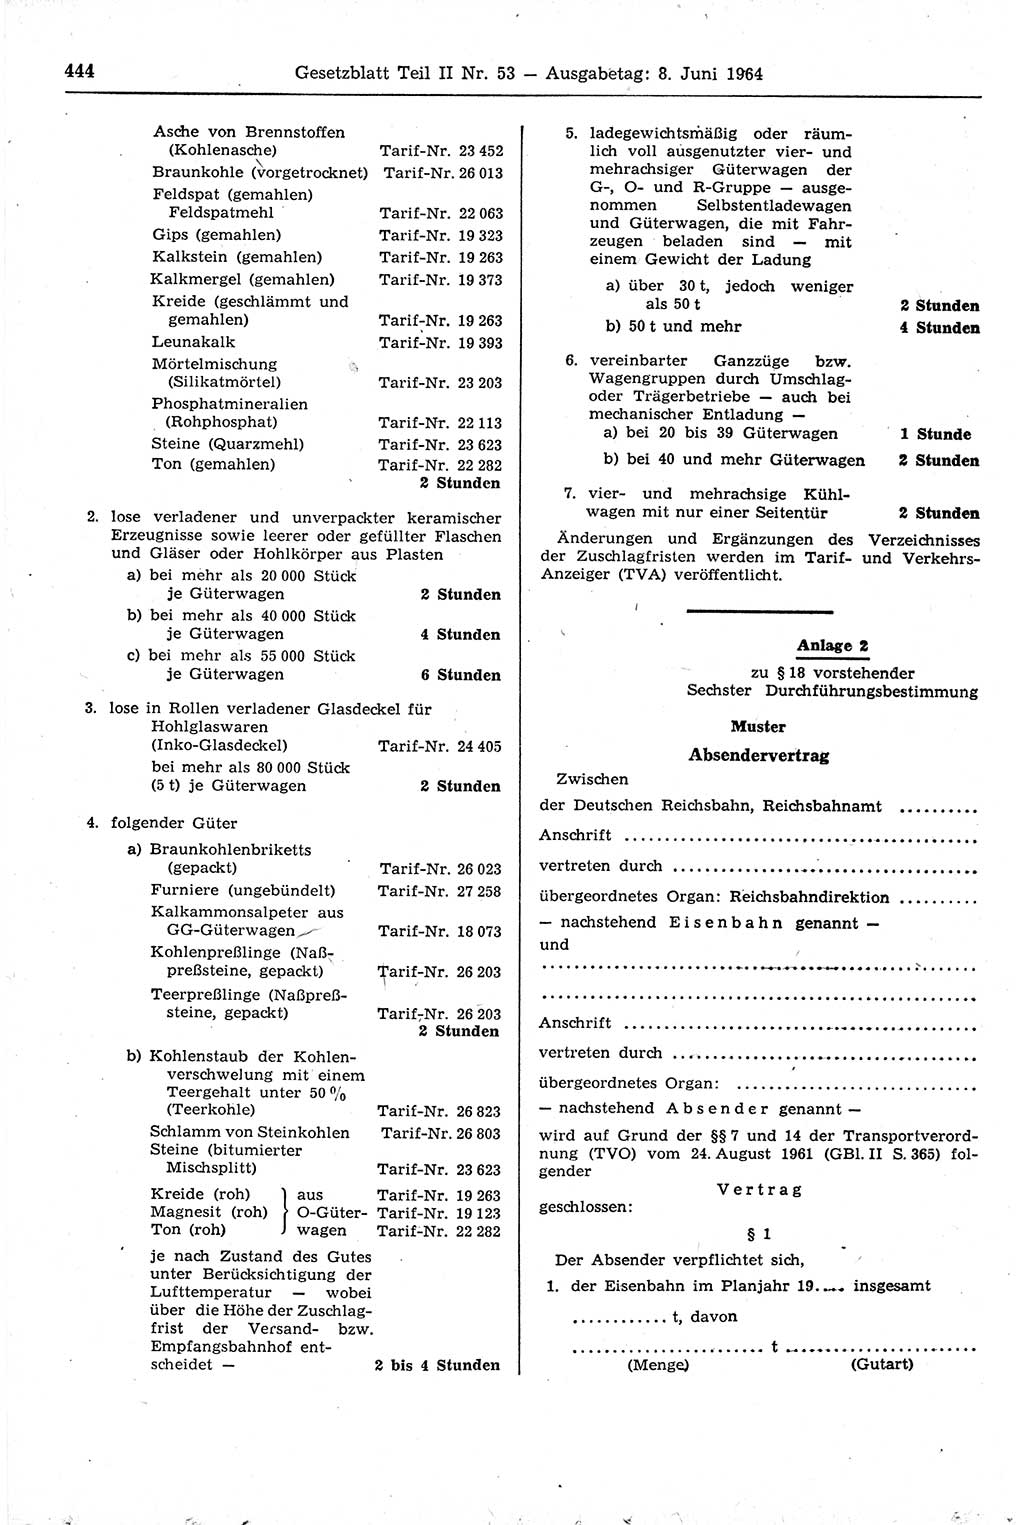 Gesetzblatt (GBl.) der Deutschen Demokratischen Republik (DDR) Teil ⅠⅠ 1964, Seite 444 (GBl. DDR ⅠⅠ 1964, S. 444)